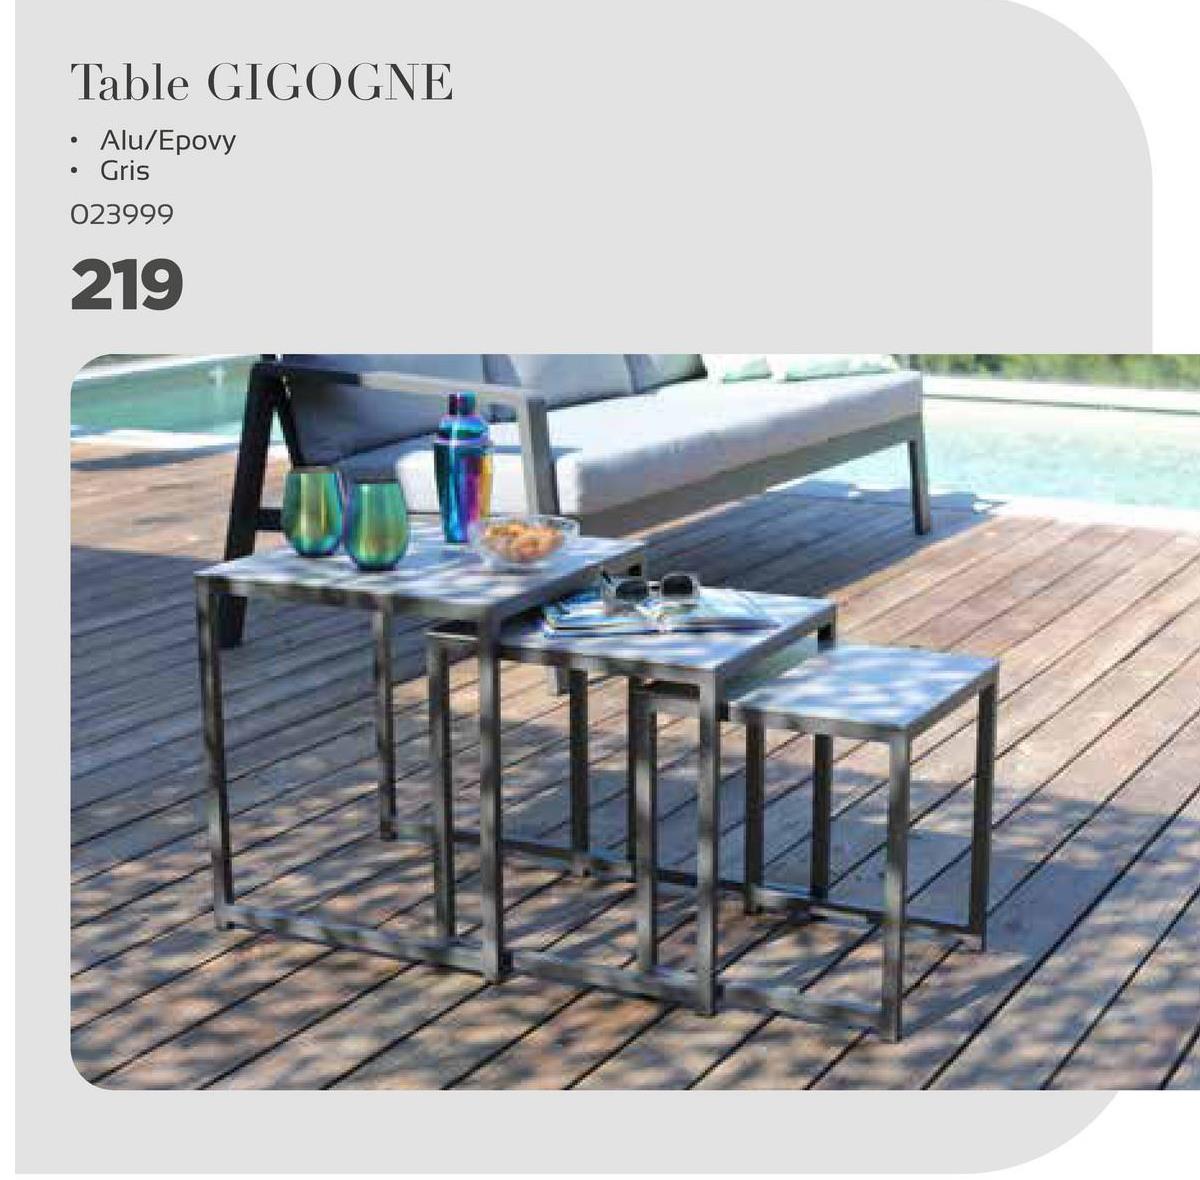 Table GIGOGNE
.
• Alu/Epovy
Gris
023999
219
HD
